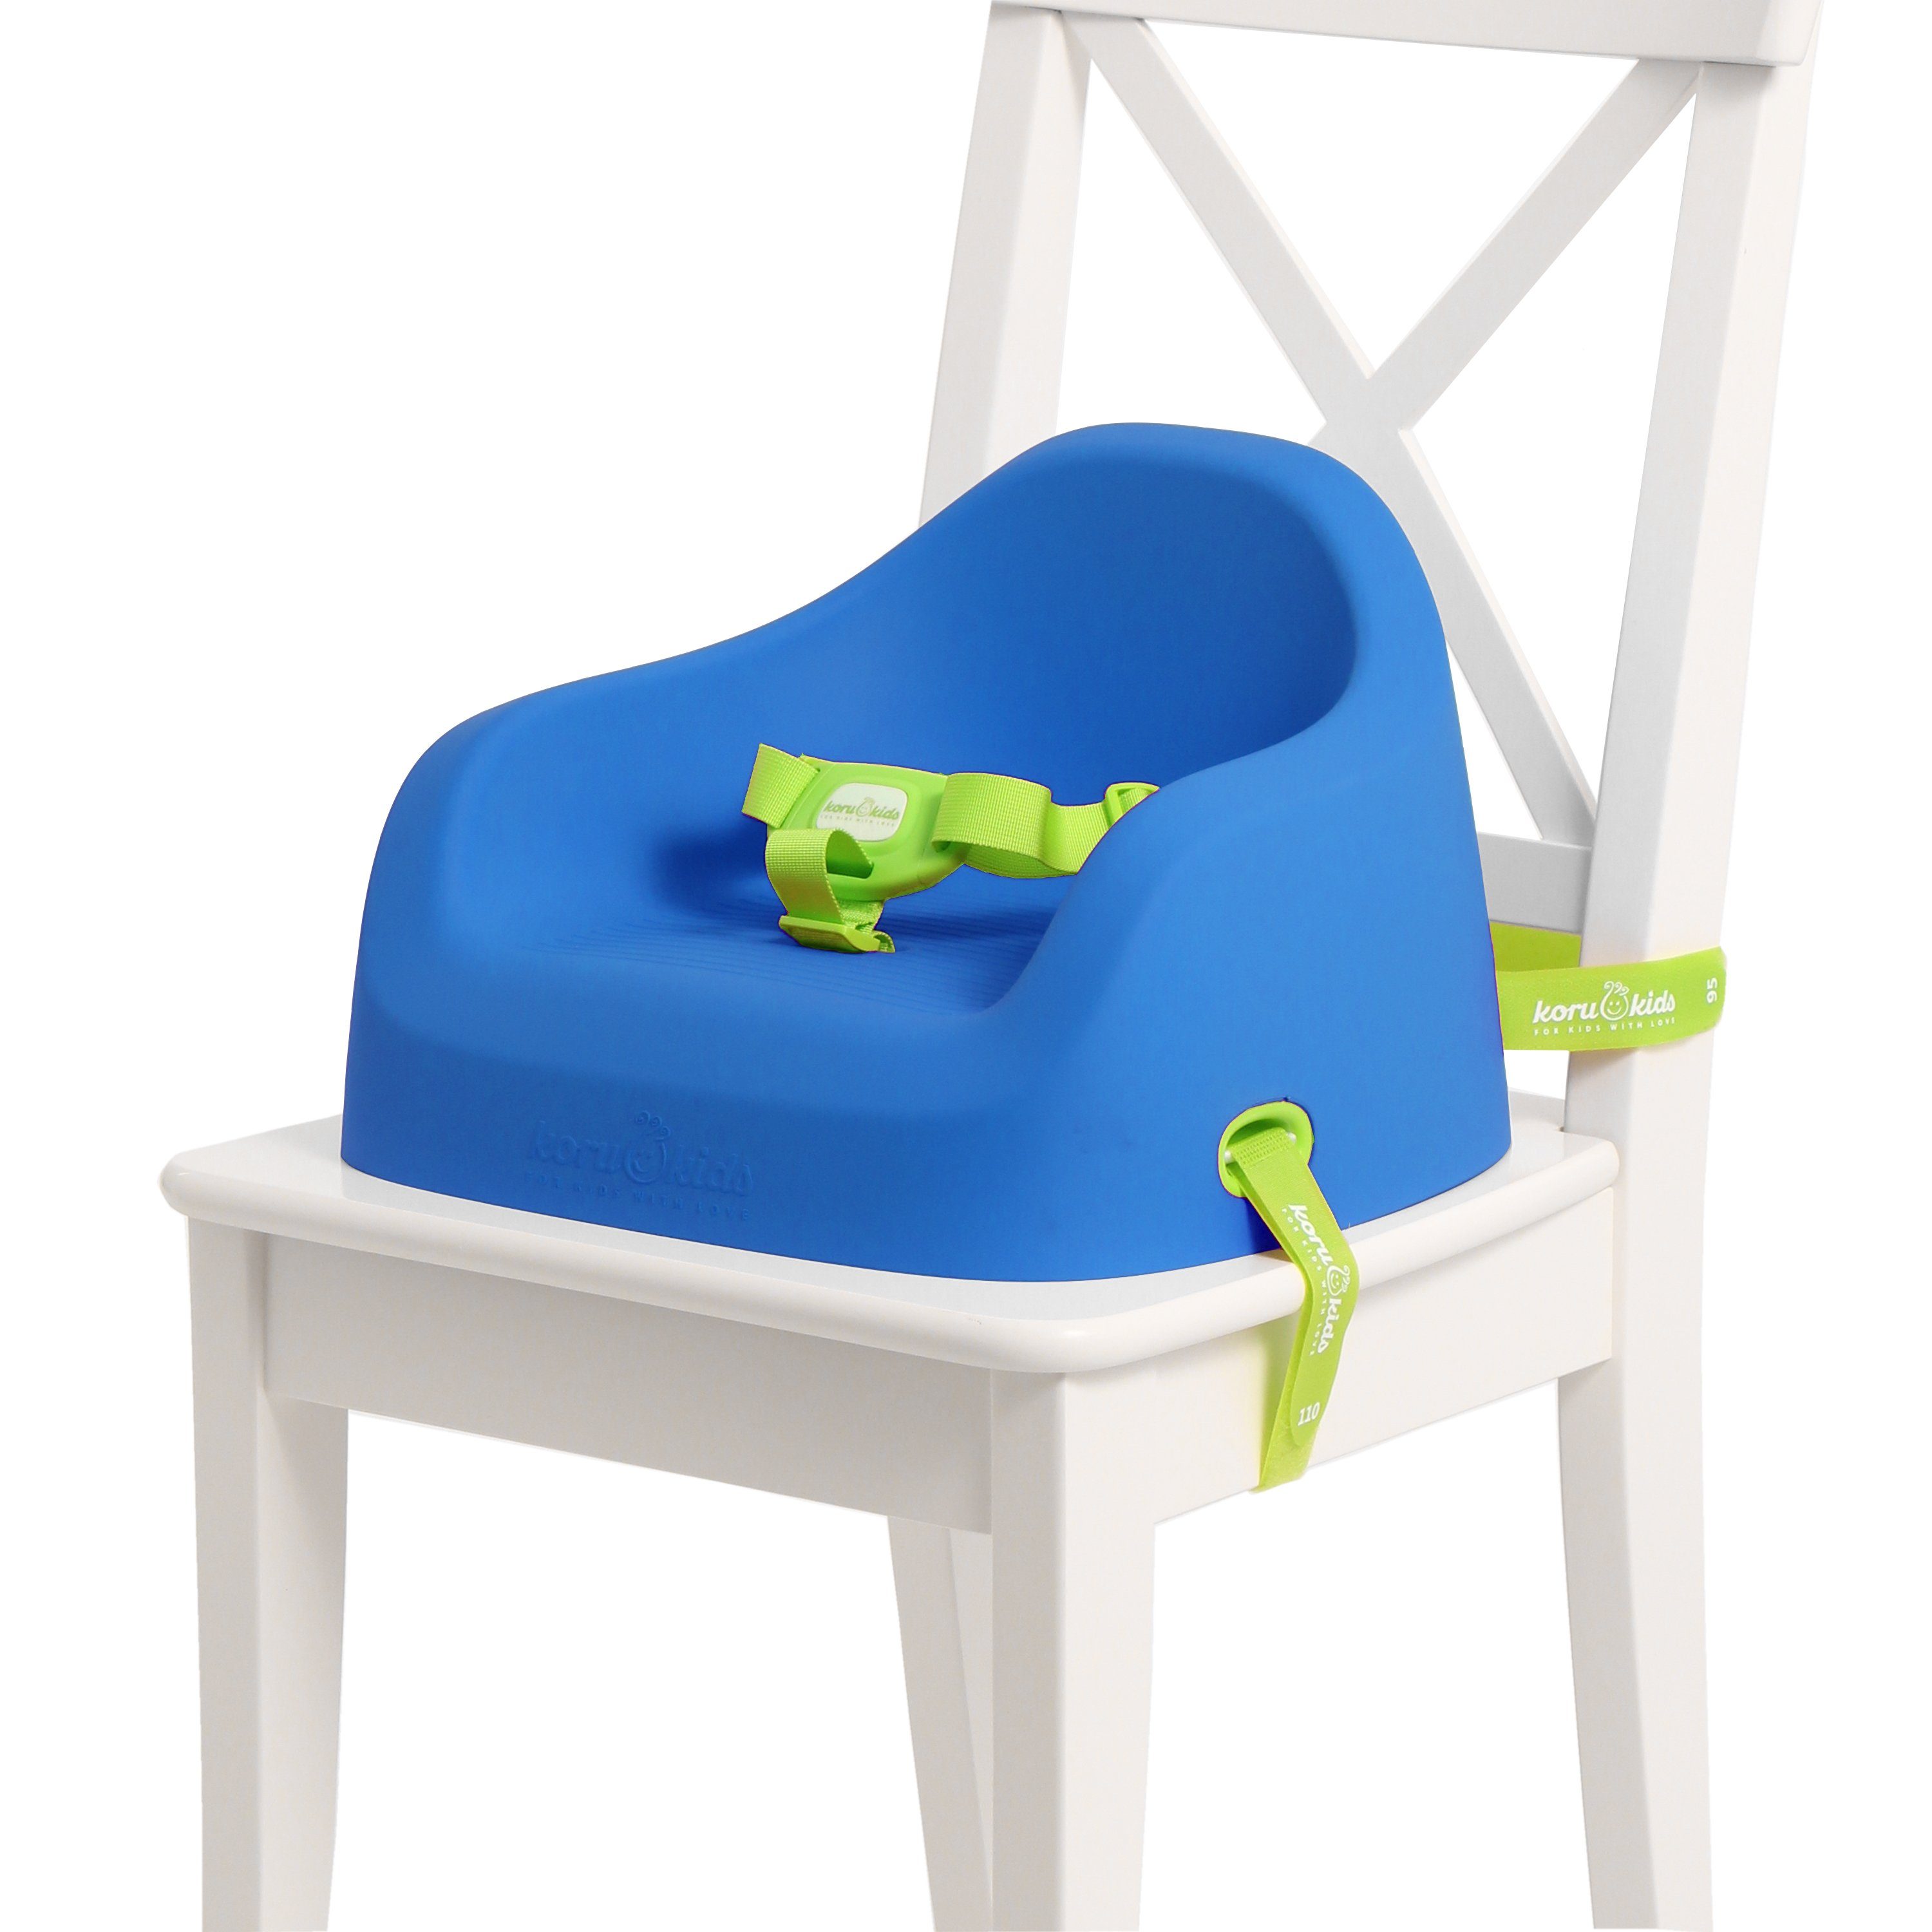 Koru Kids Kindersitzerhöhung Toddler Booster, ab: 12 Monate, bis: 7 Jahre plus, bis: 40,00 kg, Leicht am Stuhl zu fixieren, leicht zu reinigen, stapelbar, robust